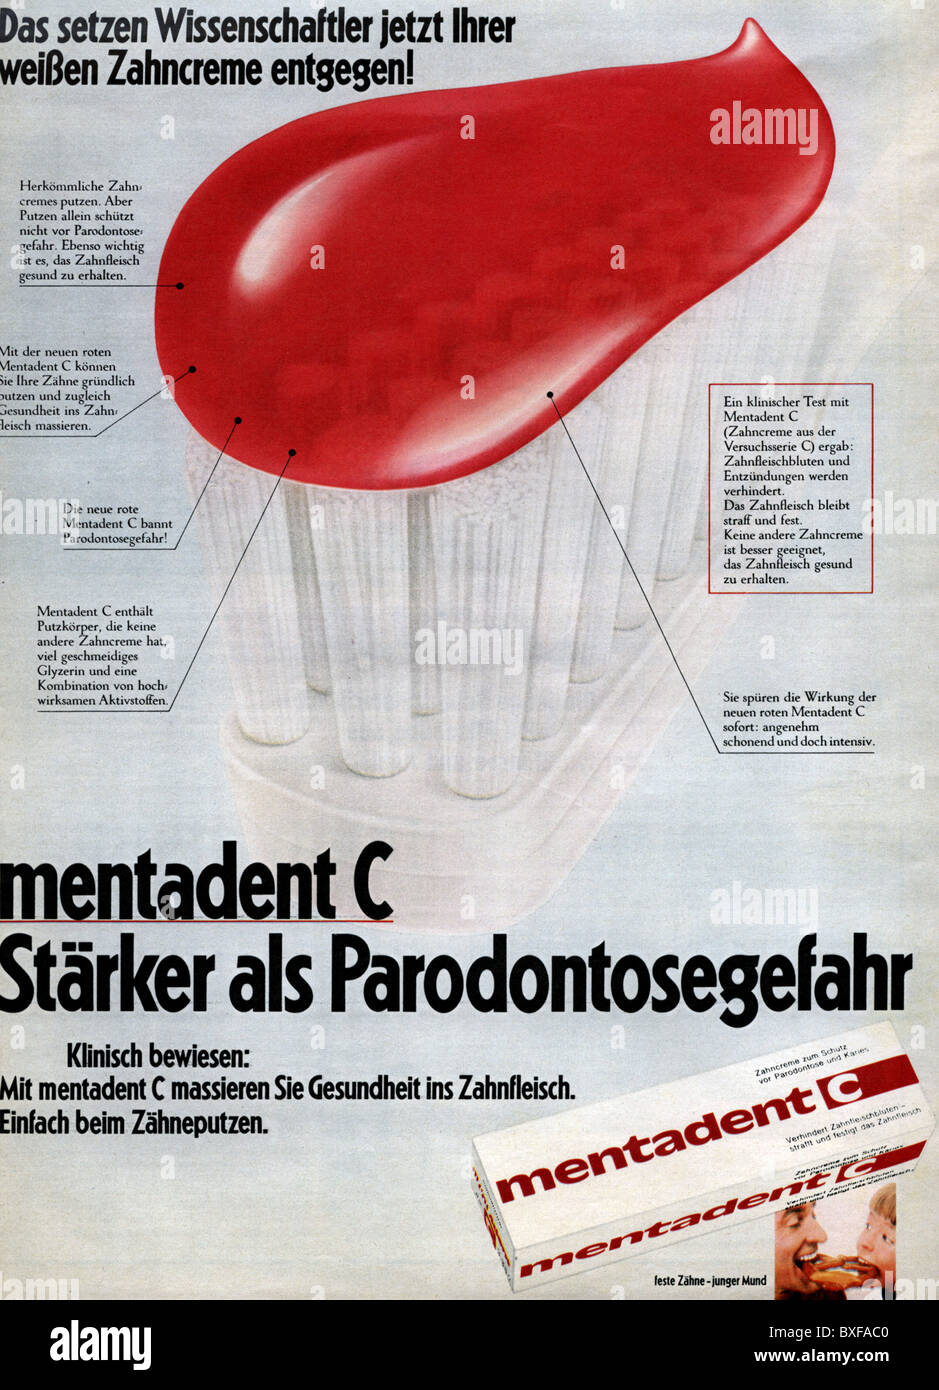 Publicité, hygiène dentaire / soins dentaires, dentifrice Mentadent C,  publicité du magazine « Hoer zu », No. 41, 16.10.1970, droits  supplémentaires-Clearences-non disponible Photo Stock - Alamy